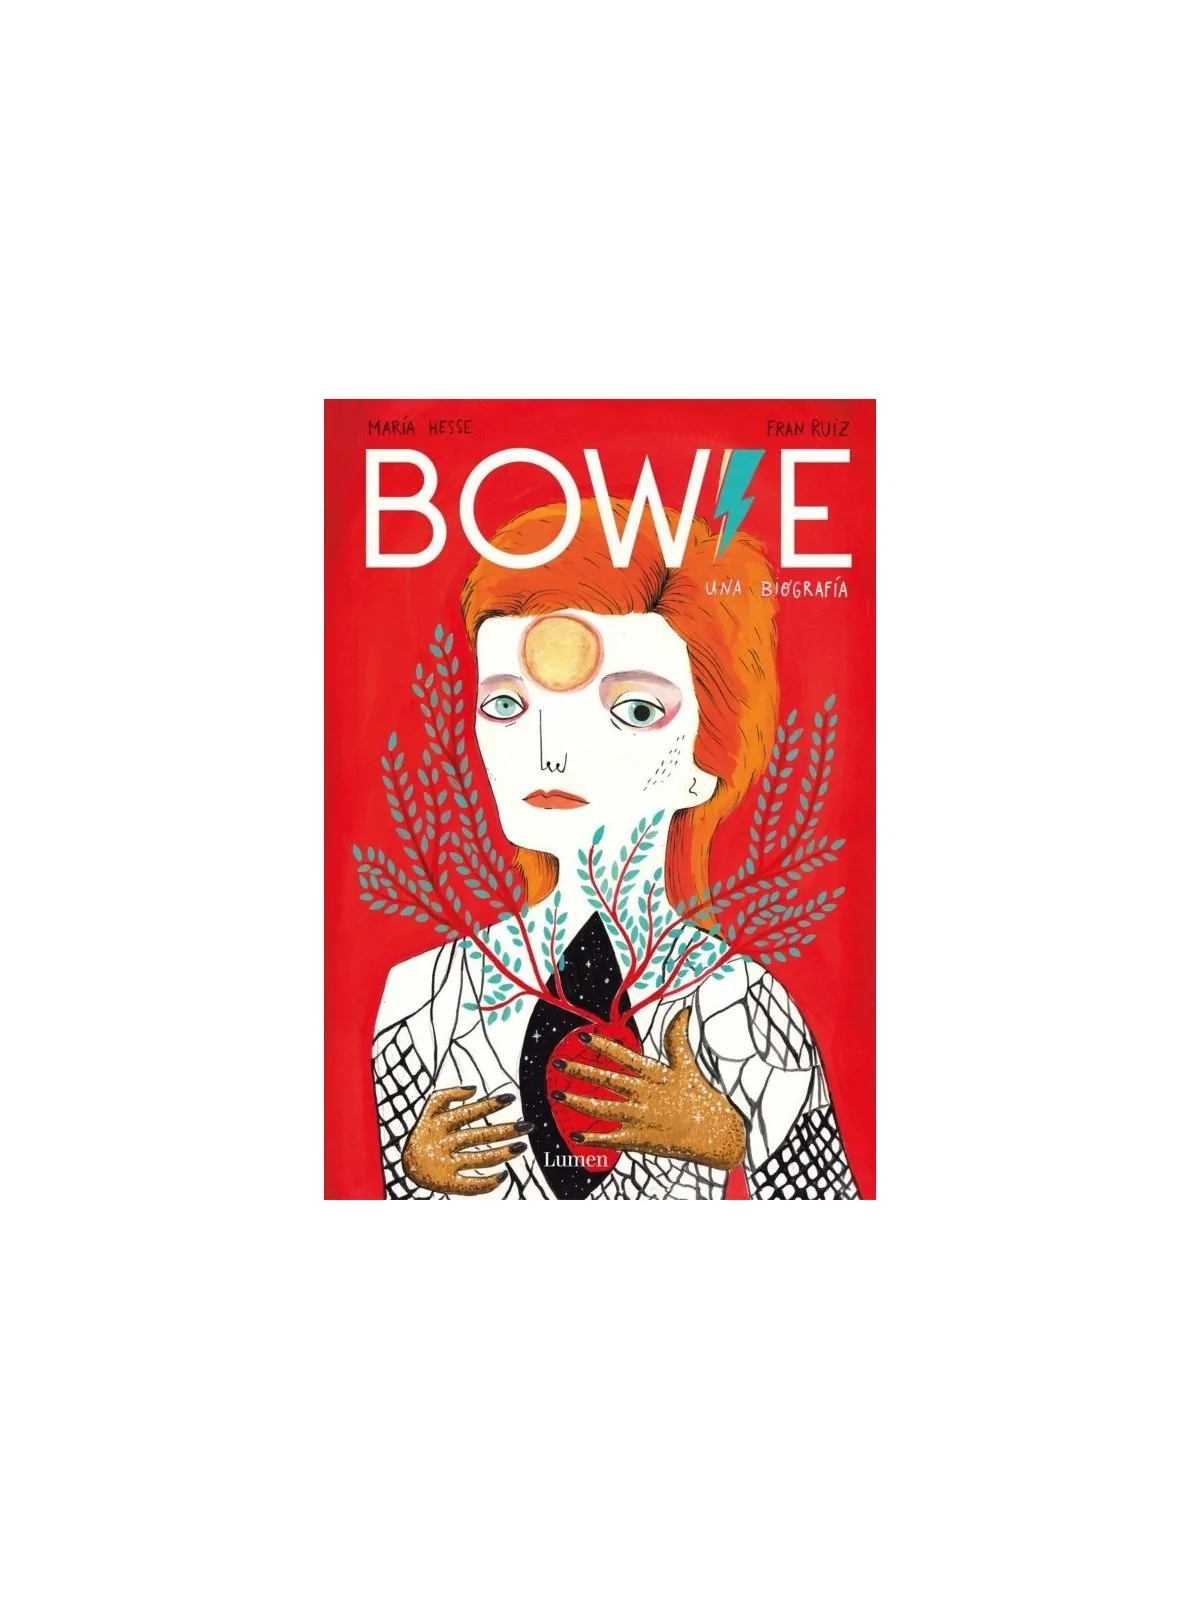 Comprar Bowie barato al mejor precio 20,80 € de penguinlibros